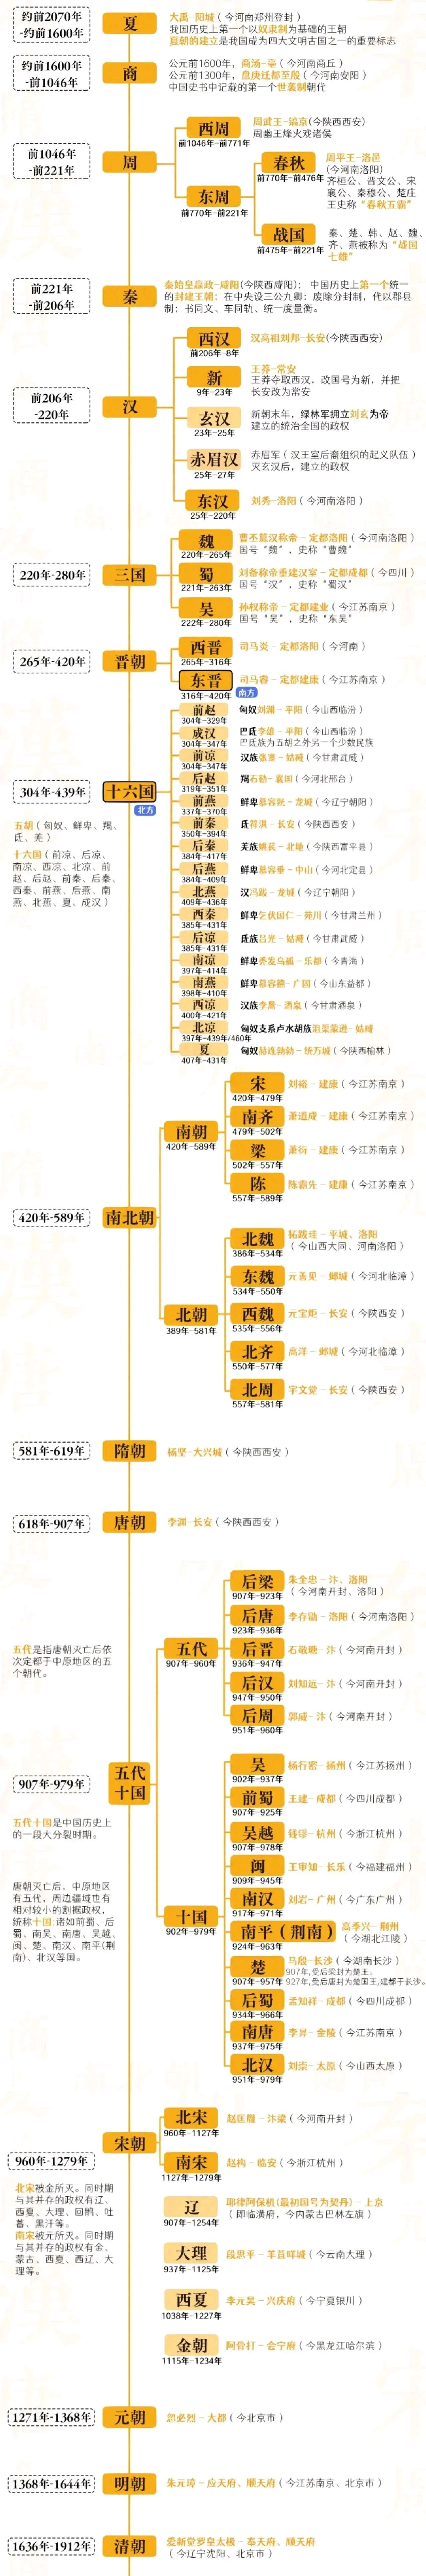 中国朝代顺序表高清图图片